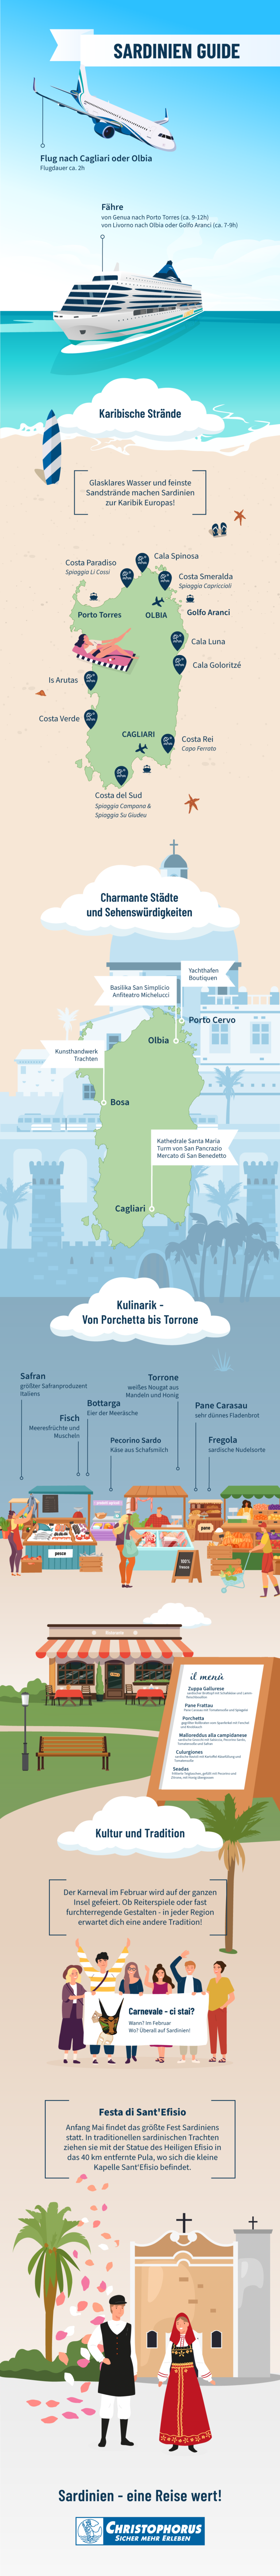 Sardinien Guide - alle Reise Informationen in einer Grafik